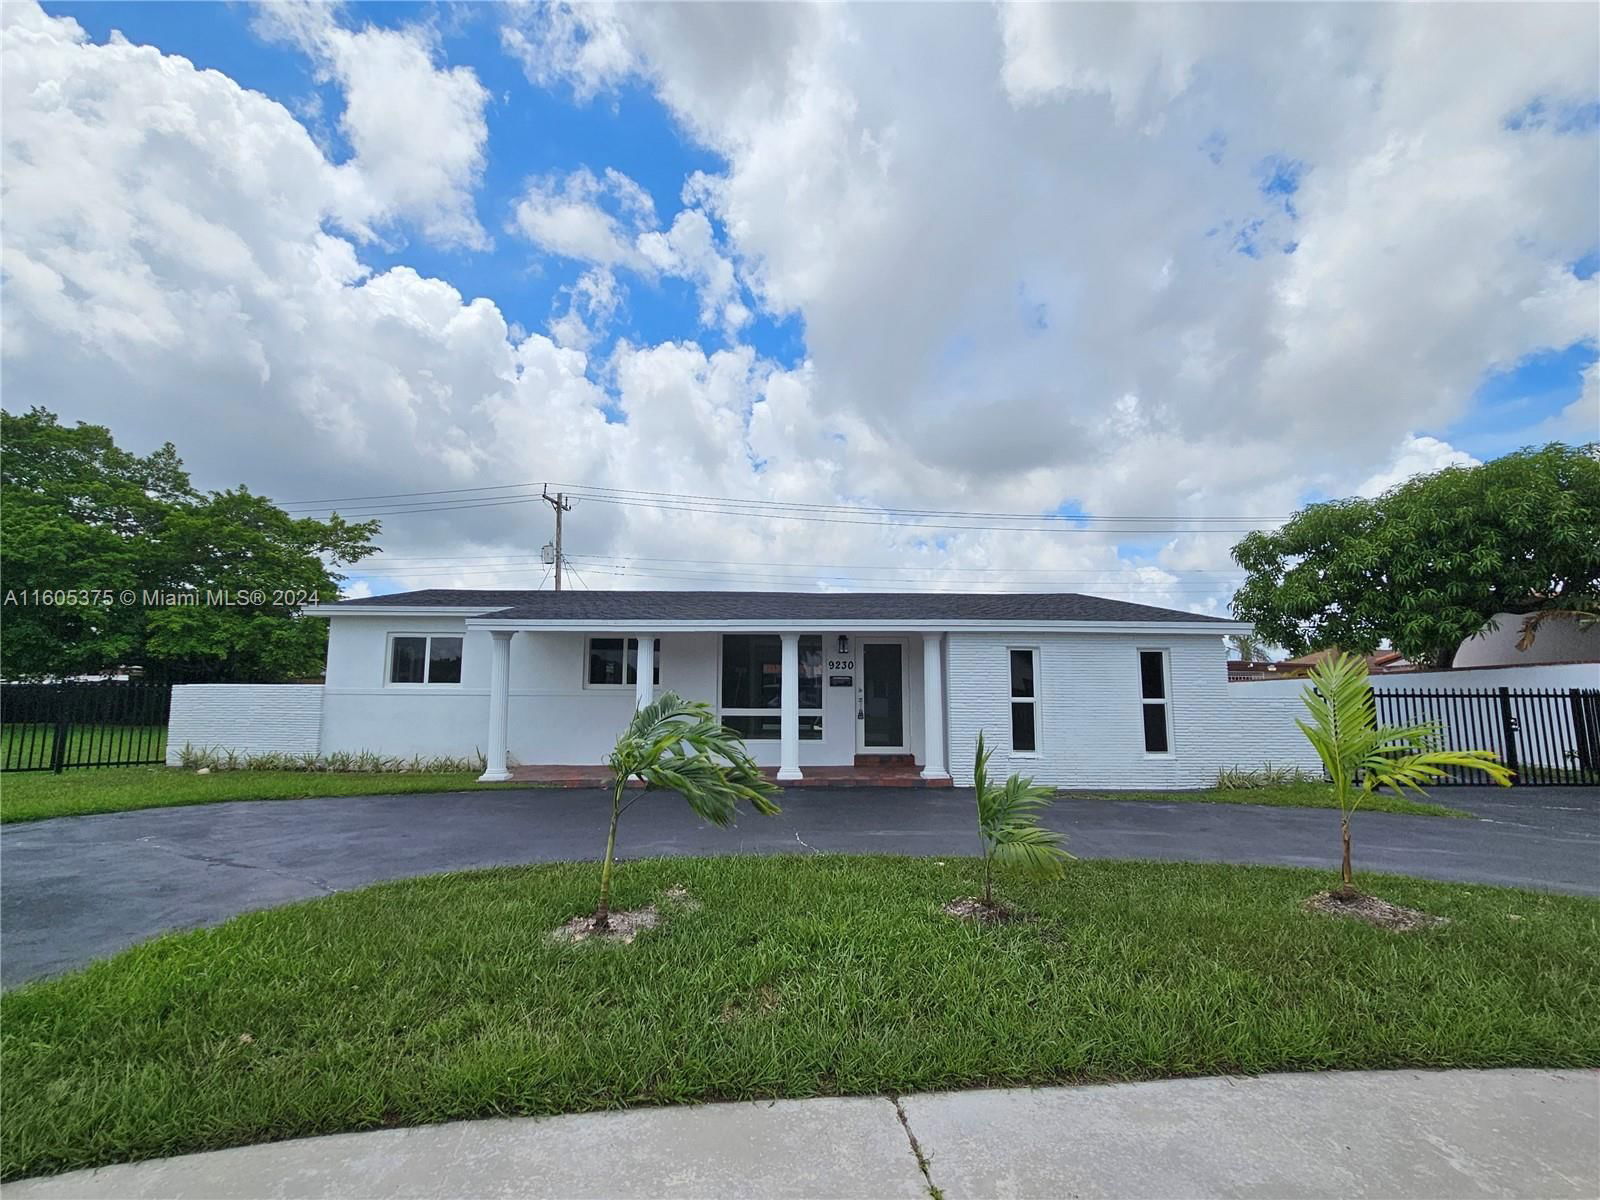 Real estate property located at 9230 19th St, Miami-Dade County, CORAL PARK ESTATES SEC 3, Miami, FL